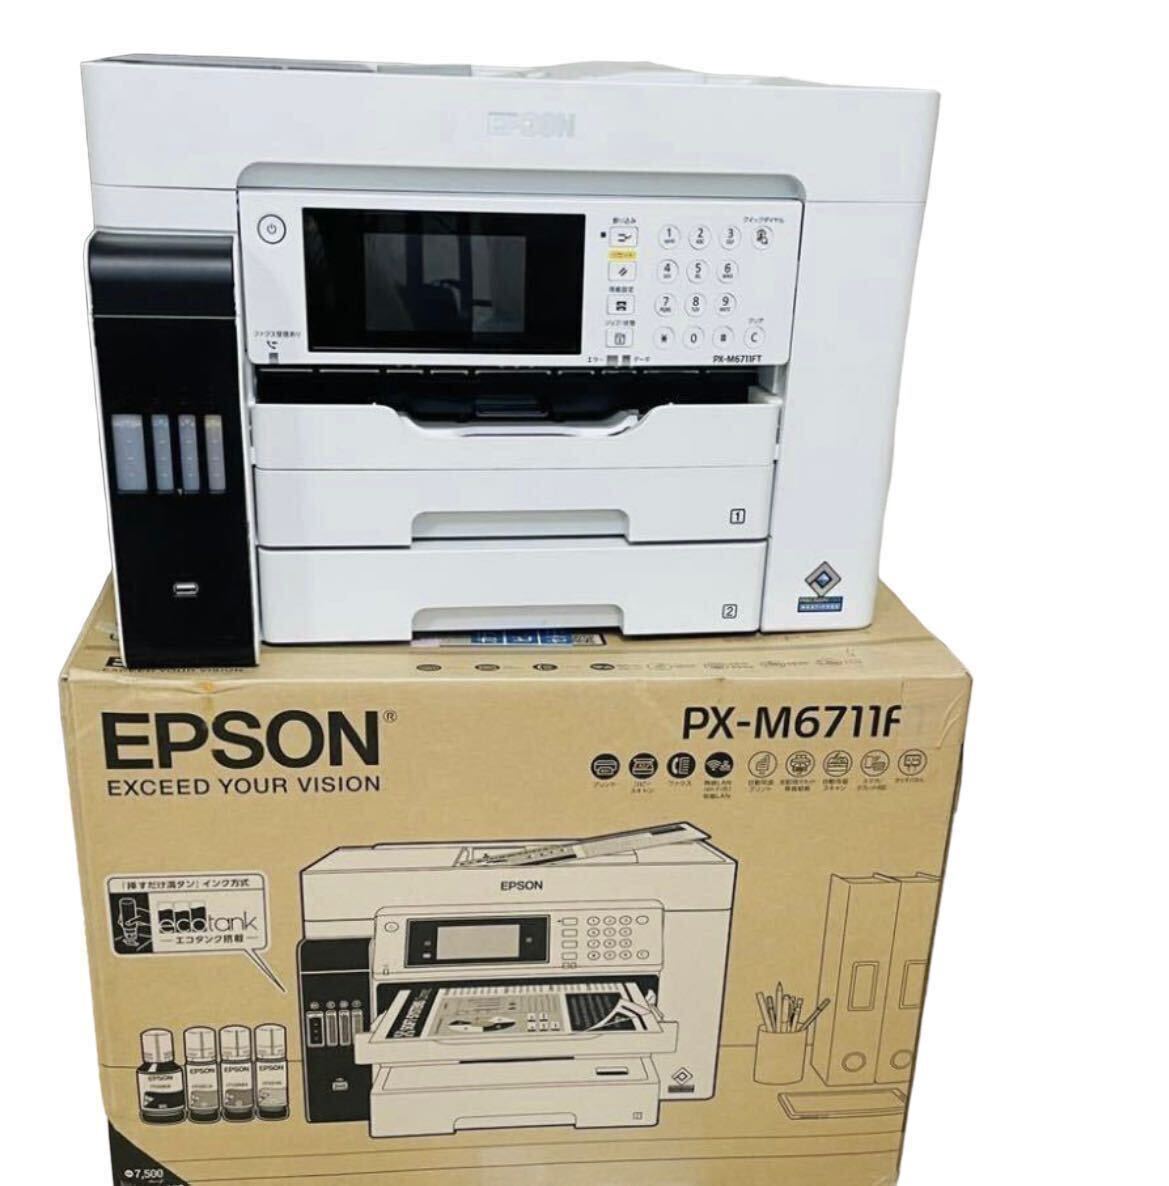 EPSON/エプソン PX-M6711FT A3対応ビジネスインクジェット複合機 エコタンク搭載モデルの画像4